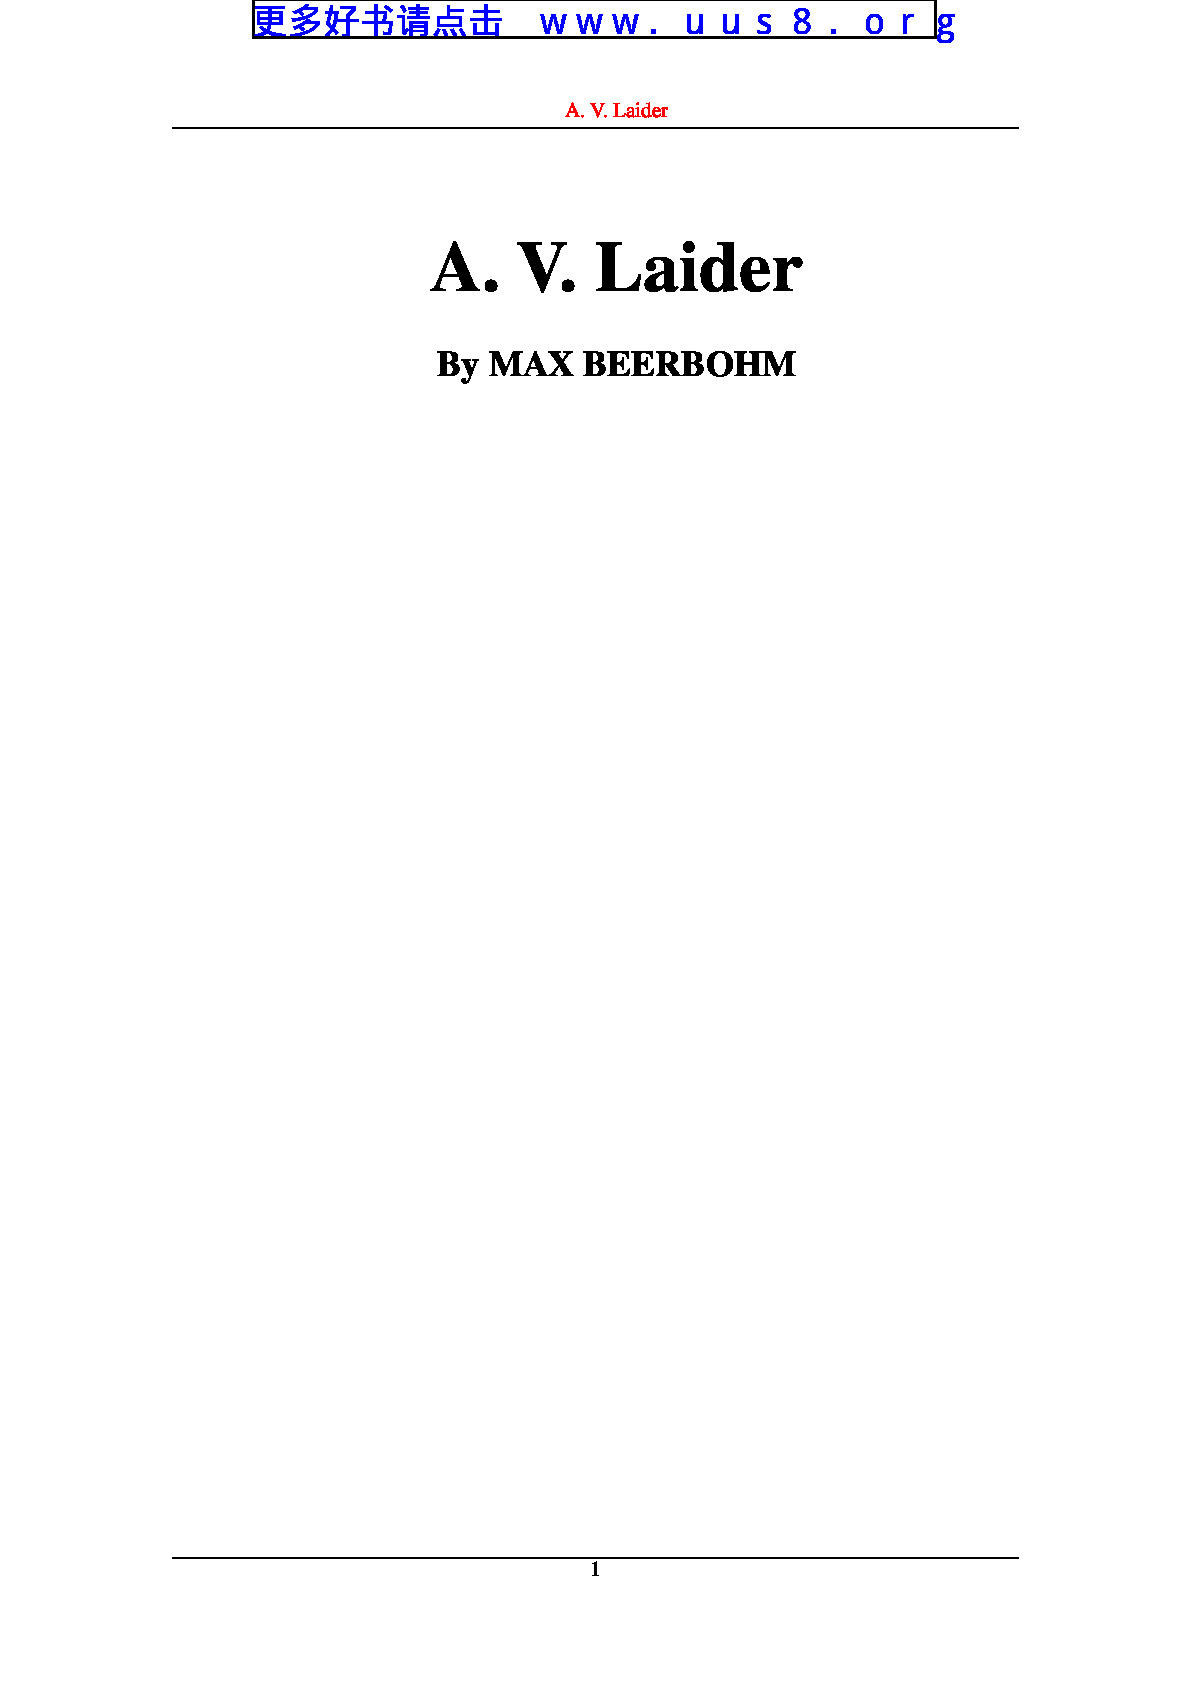 a_v_laider(AV